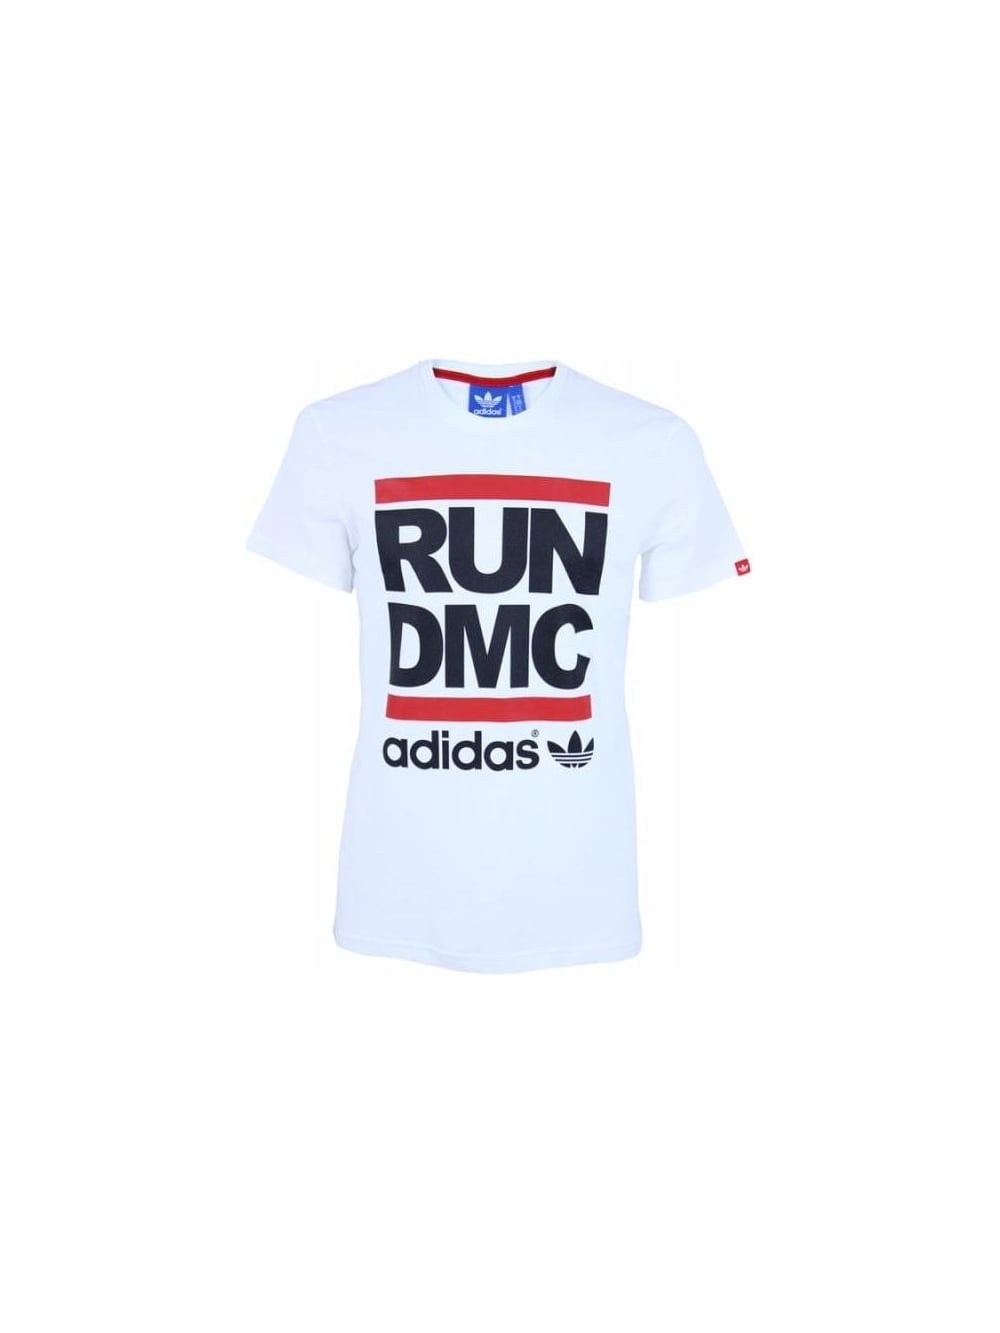 DMC Logo - Adidas Originals X Run DMC Logo T Shirt in White